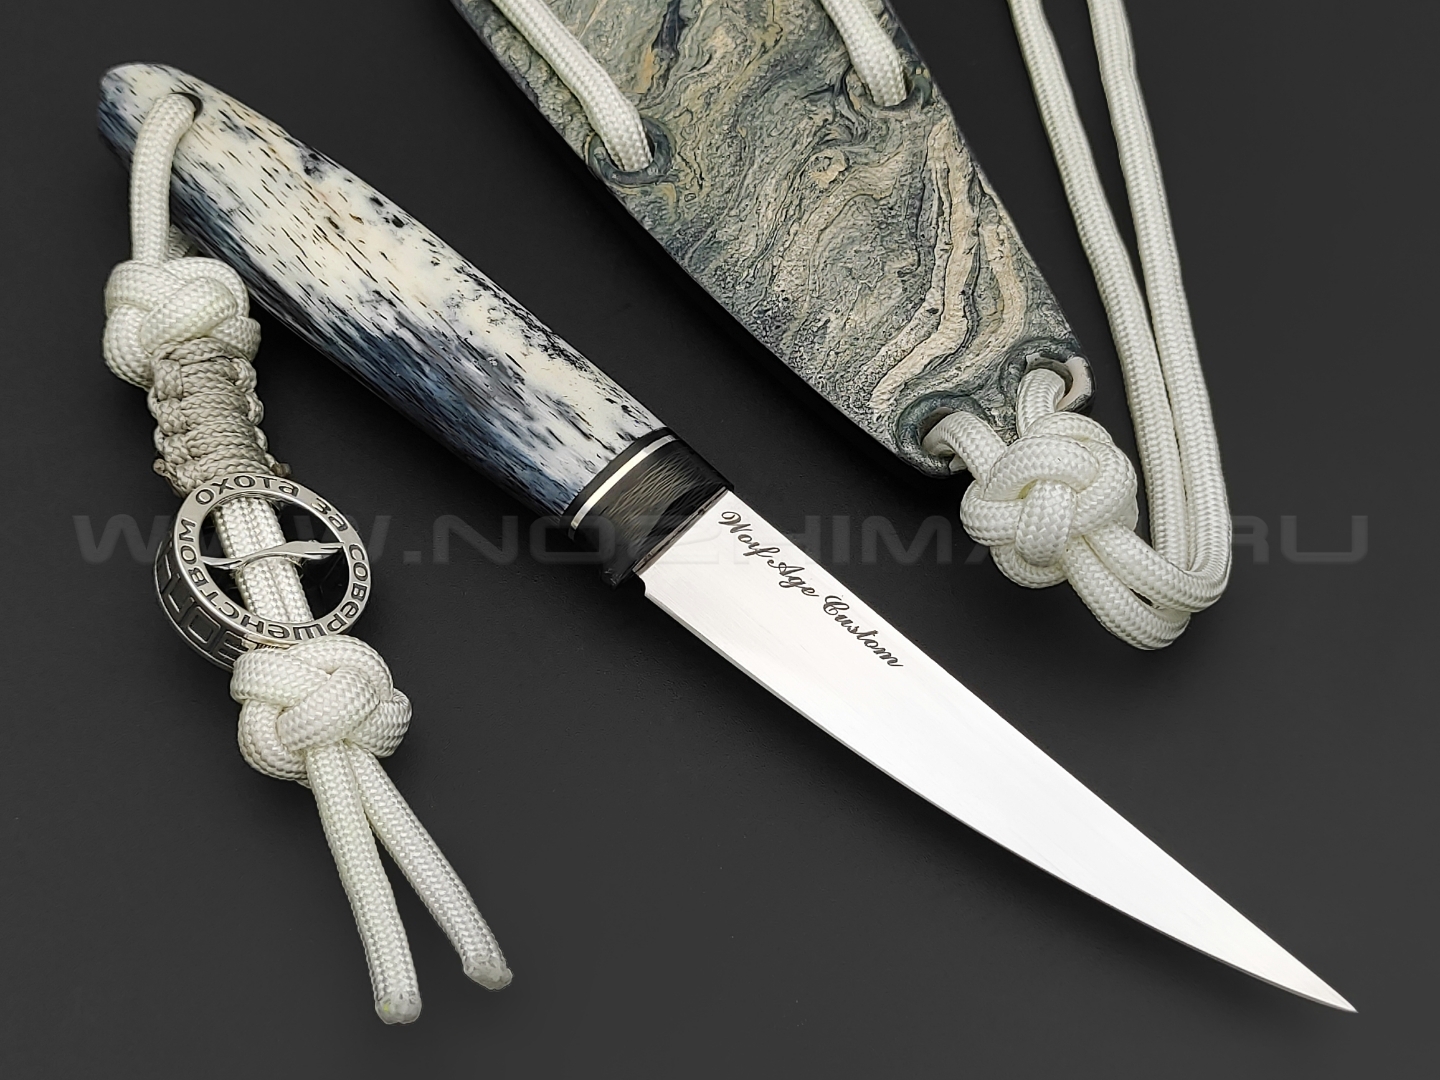 Волчий Век нож Сечень Custom сталь Custom MELT WA satin, рукоять Стаб. кость жирафа, carbon fiber